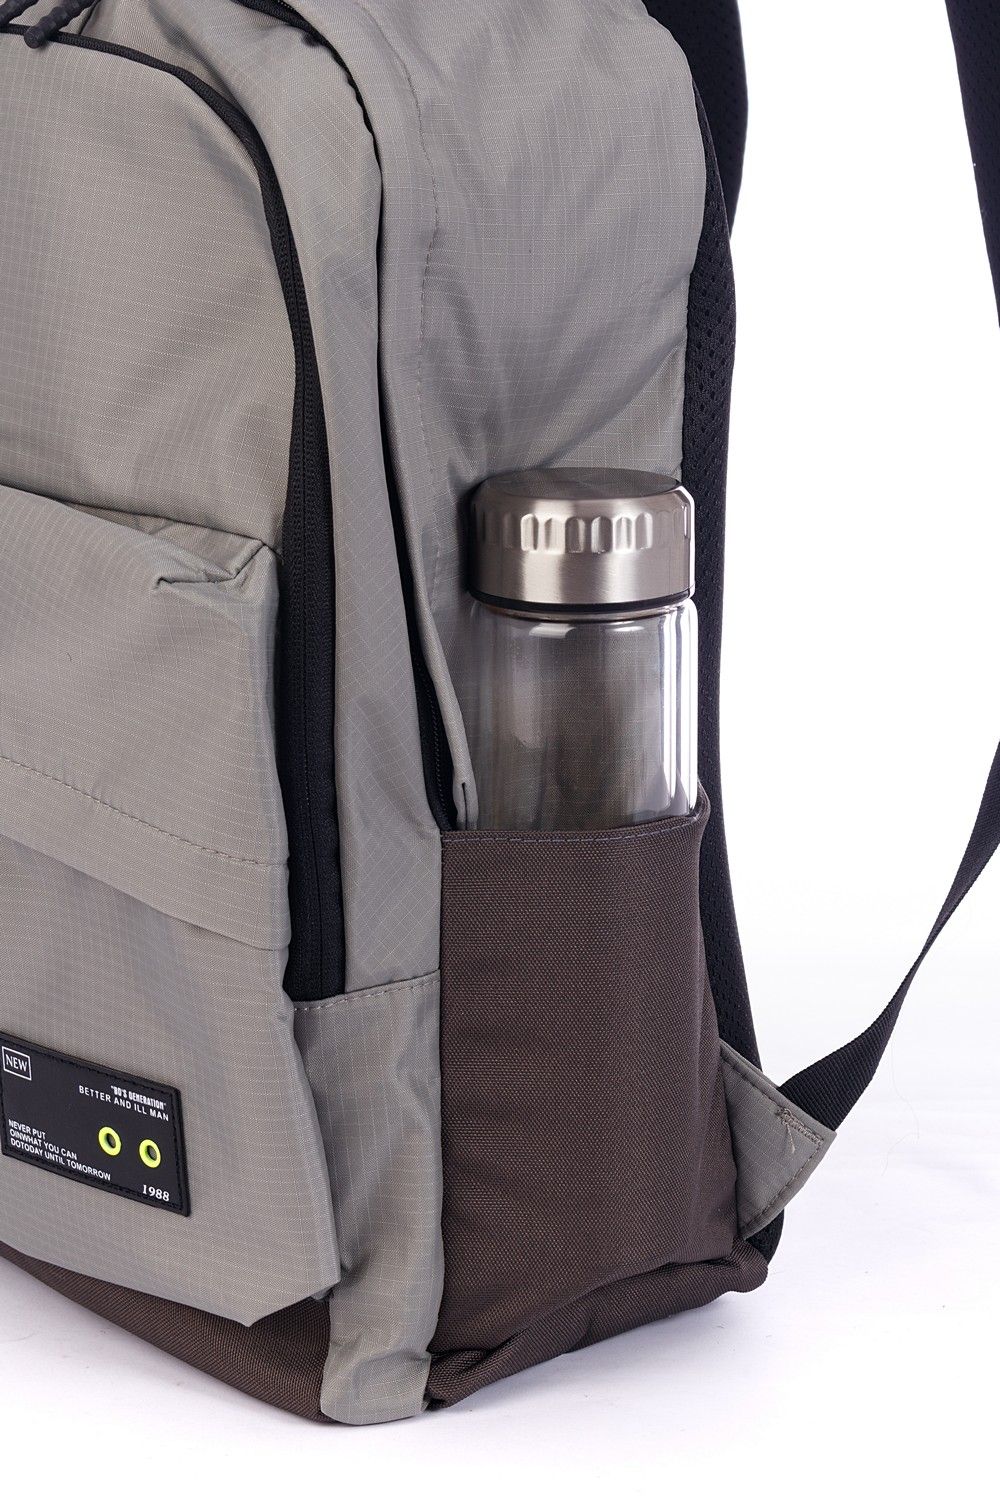 Рюкзак мужской светло-серый, однотонный, городской, с широкими лямками, 20л.